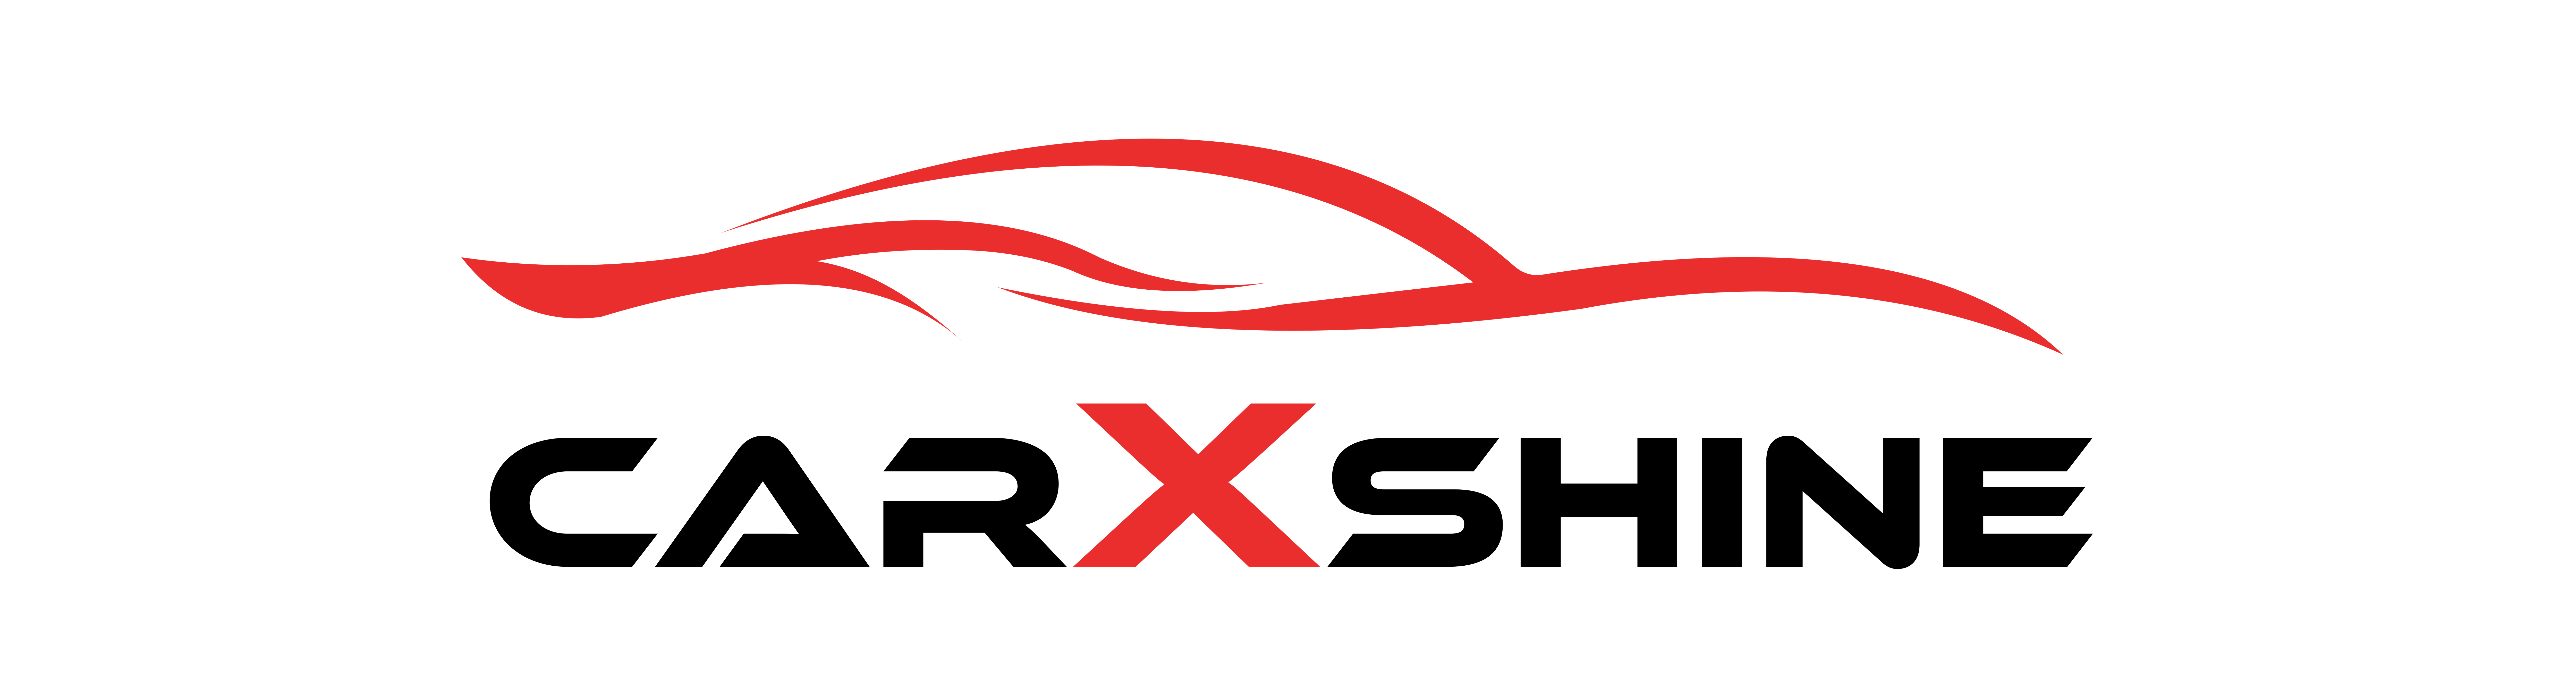 Car logo 001